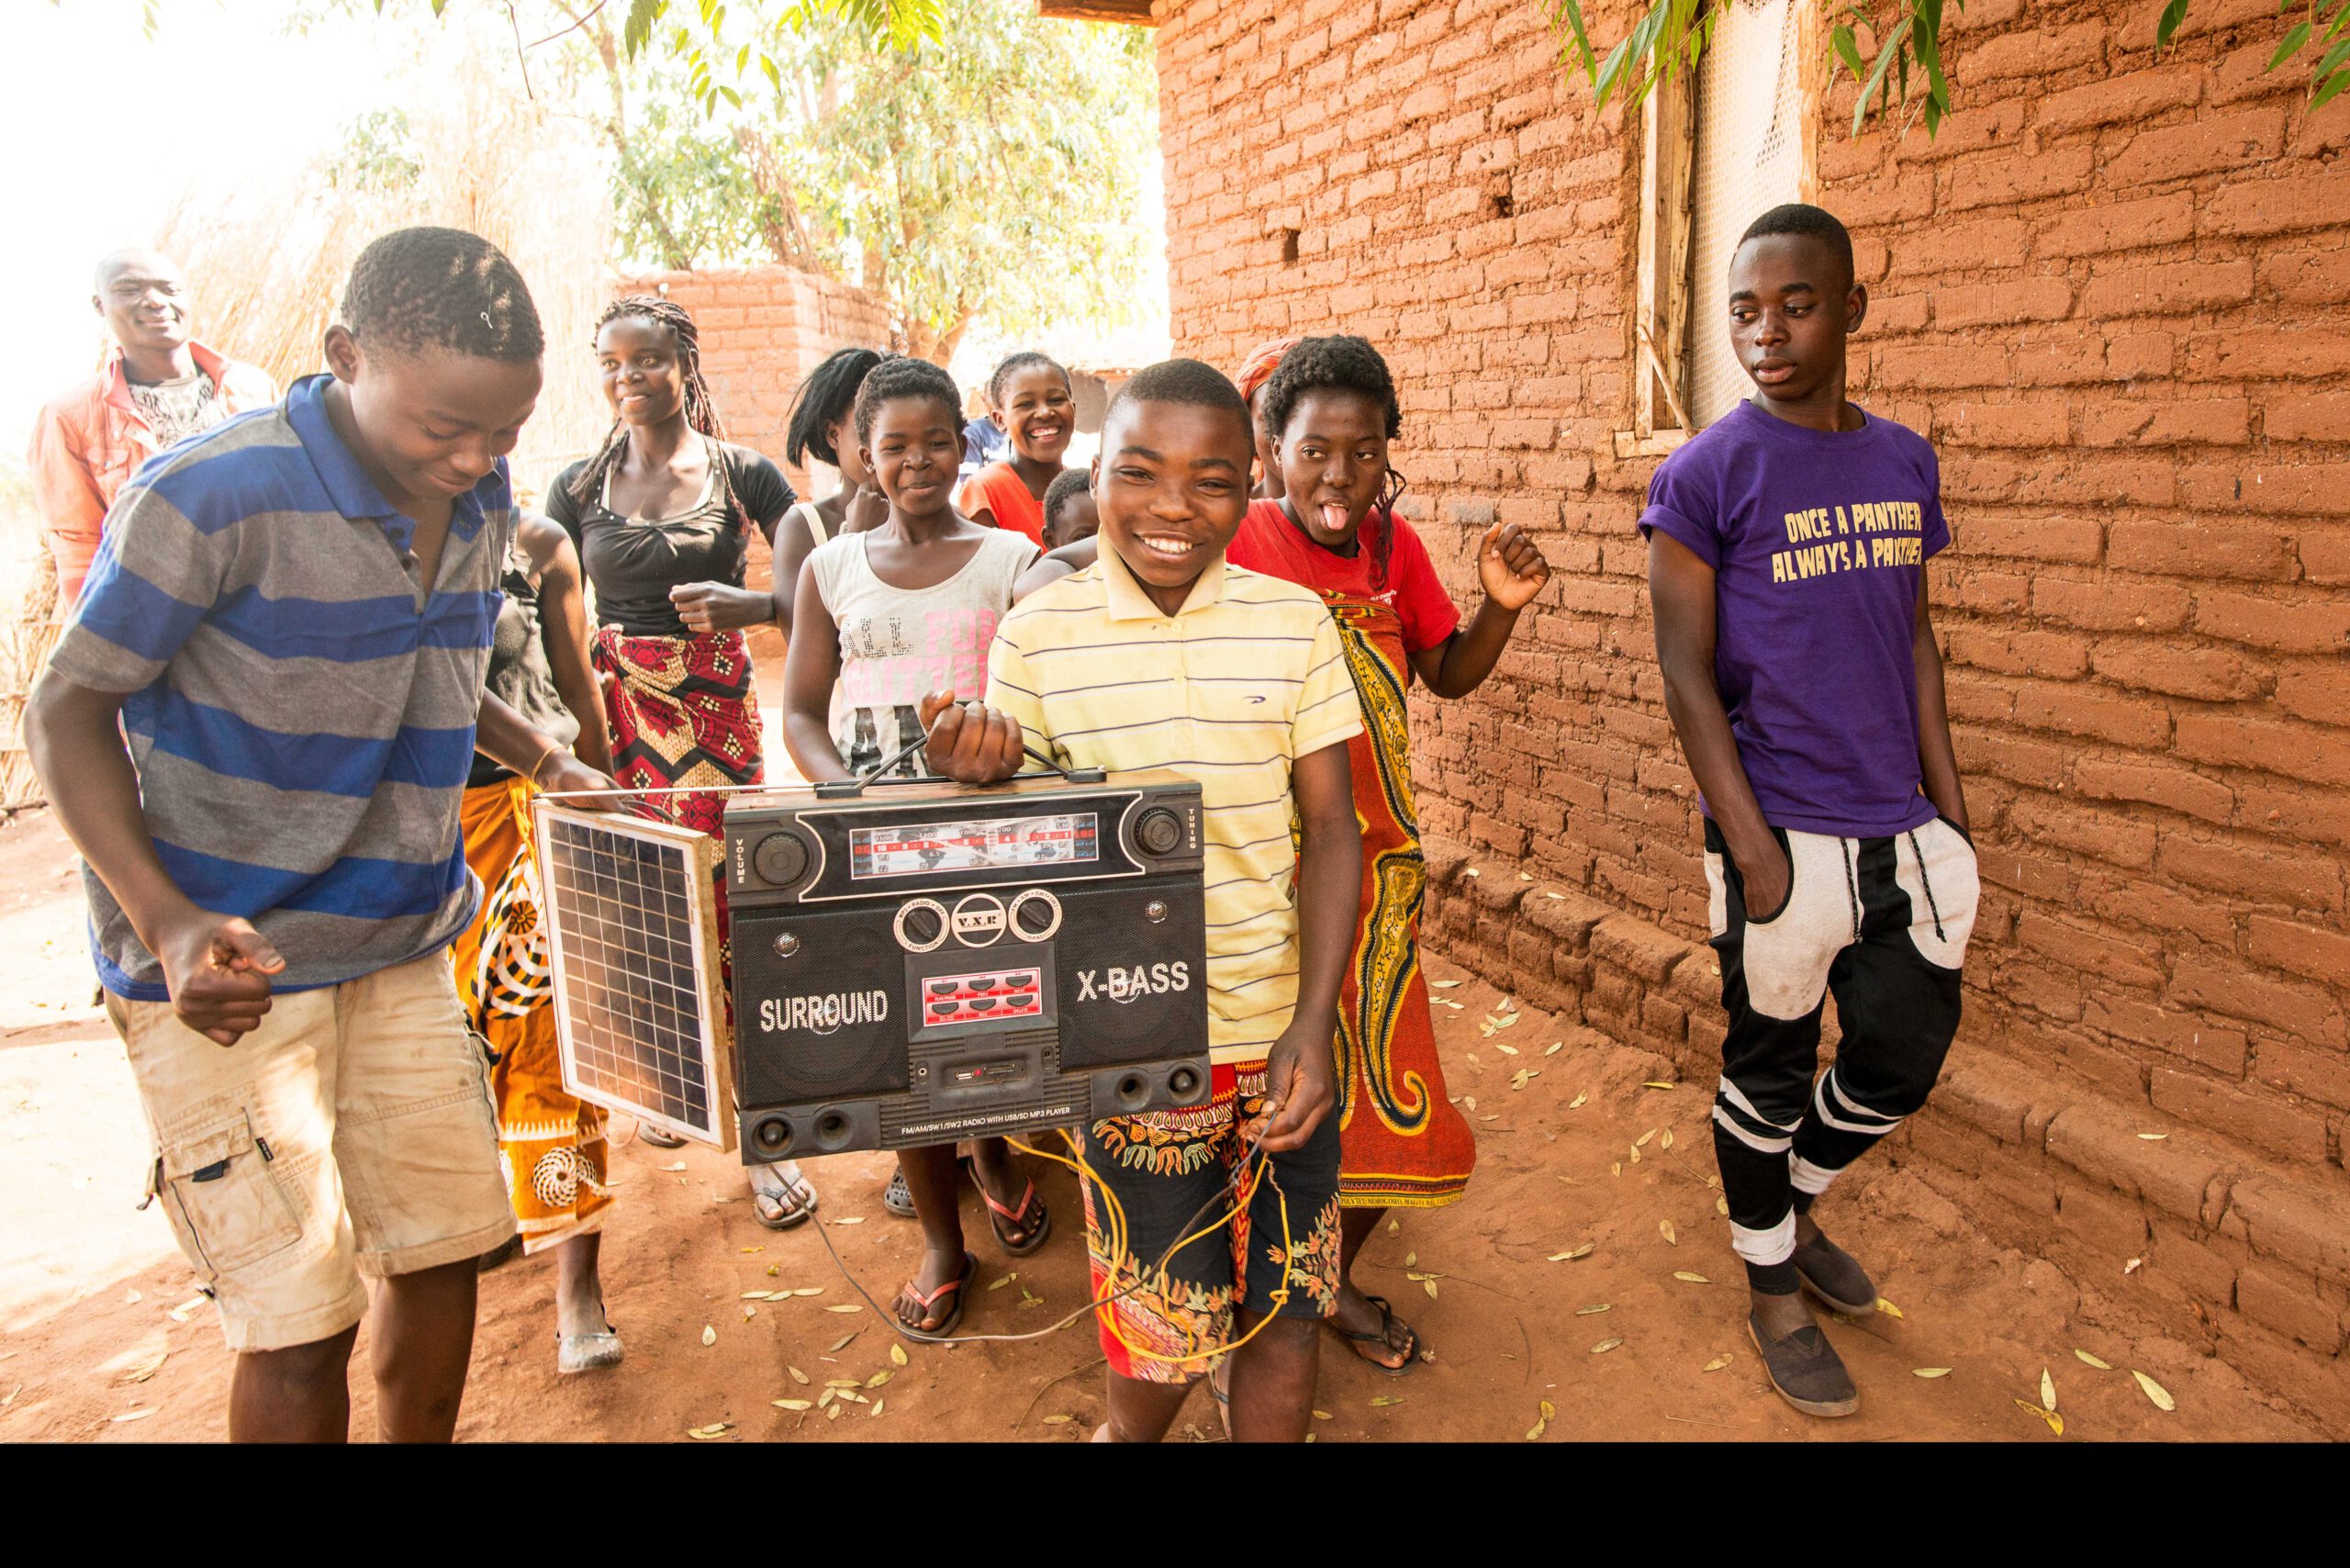 GNO0498_Corona-Hilfe Radiogeräte_Plan International_Bild stammt aus einem ähnlichen Plan-Projekt in Malawi_Bild2